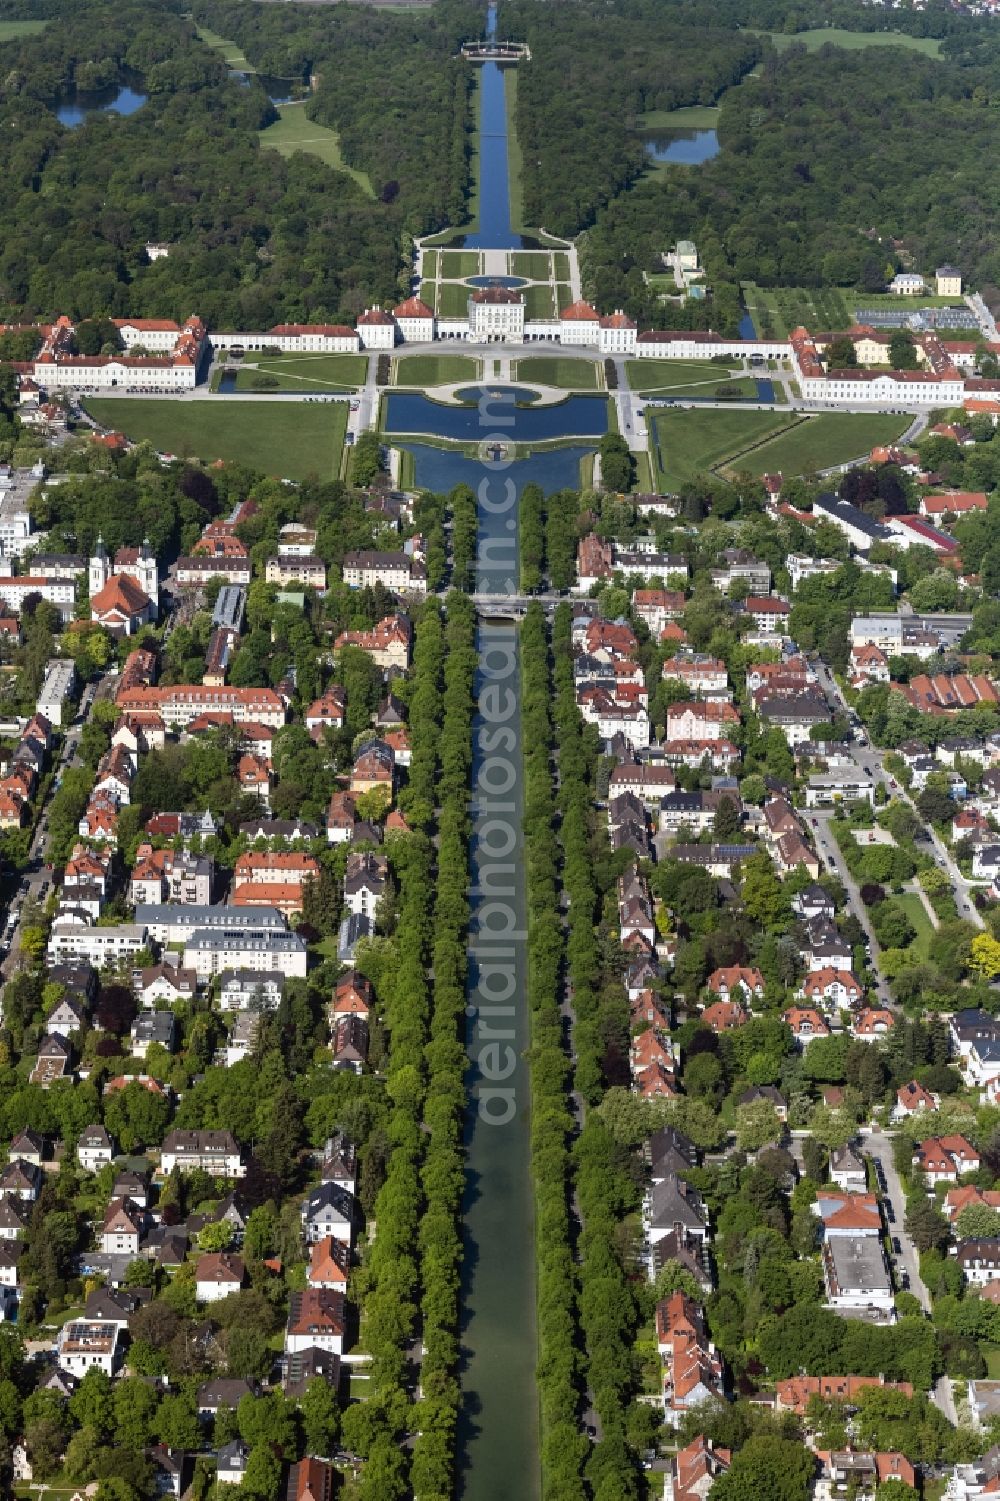 München from above - Building and Castle Park Castle Nymphenburg im Stadtteil Neuhausen-Nymphenburg in Munich in the state Bavaria